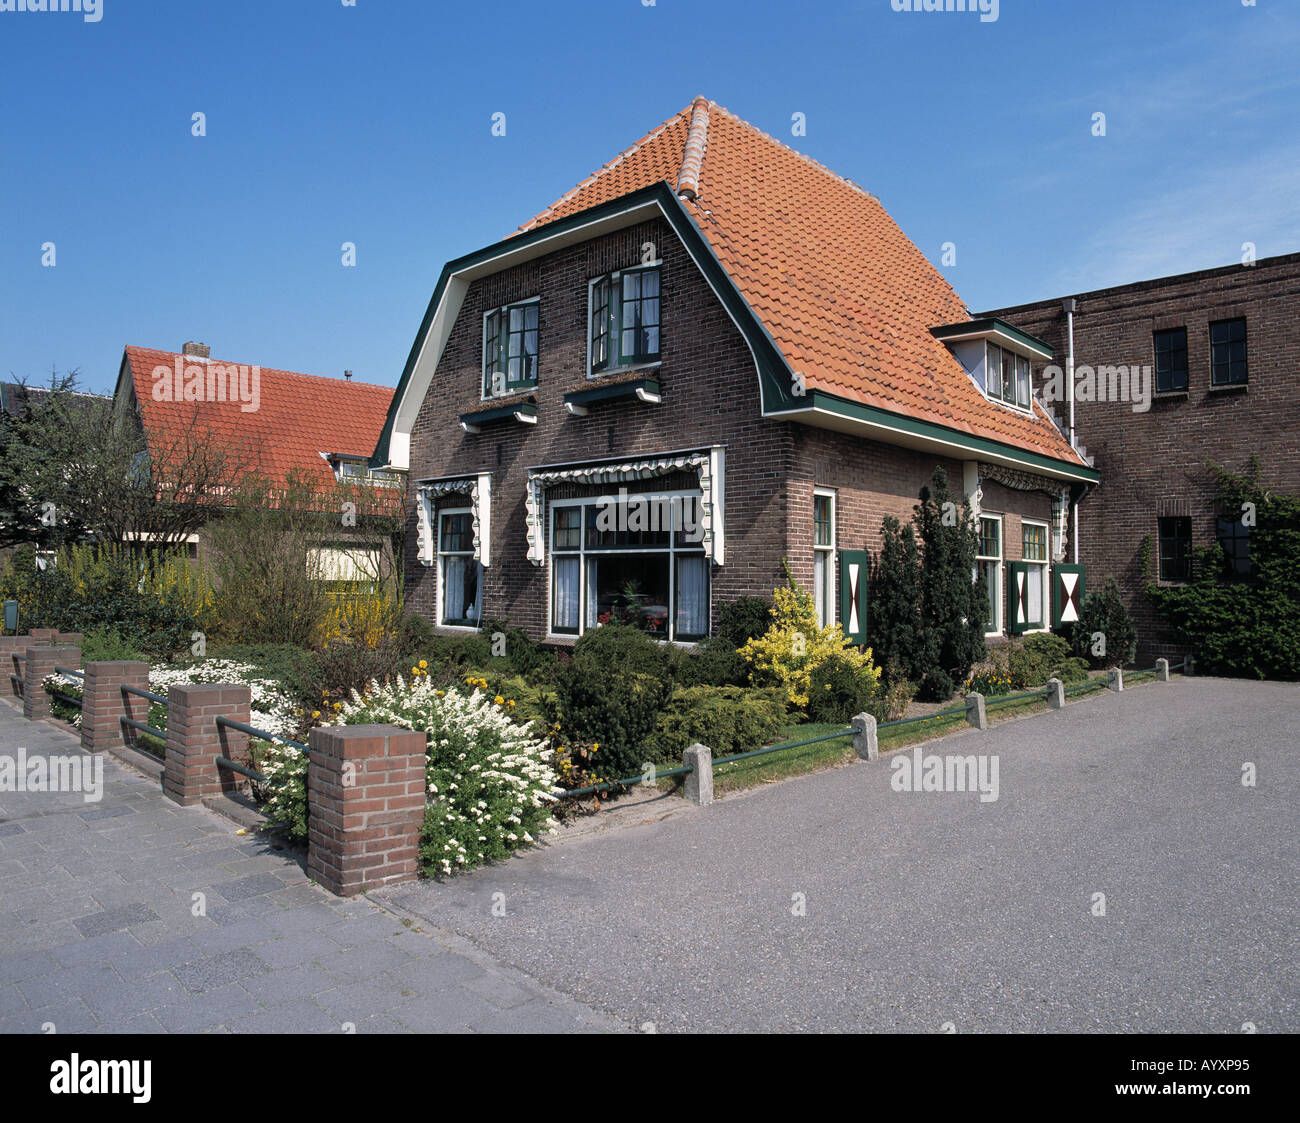 Einfamilienhaus mit Vorgarten, Rijnsburg, Suedholland, Niederlande Foto Stock